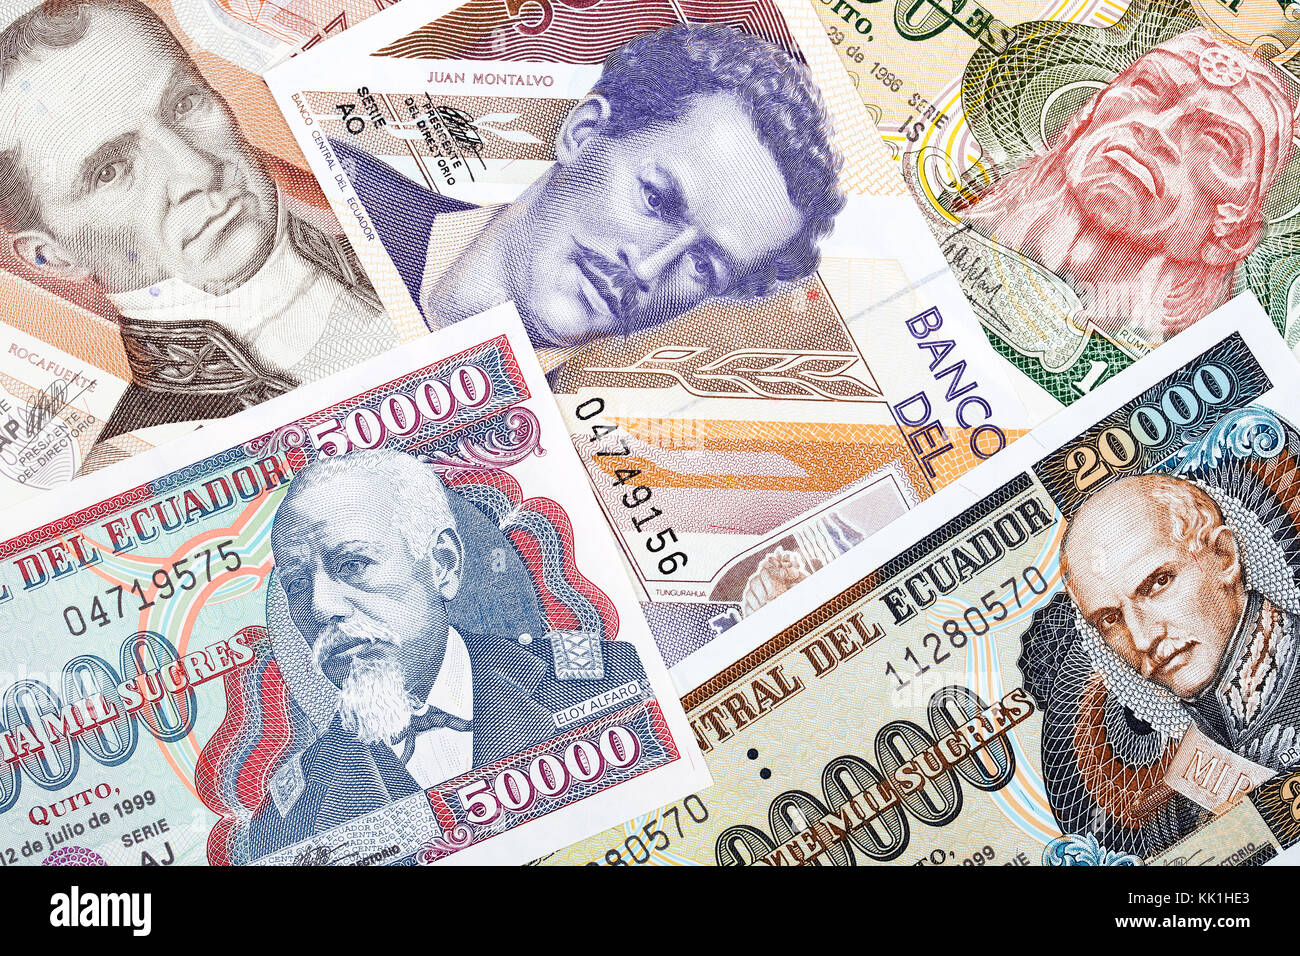 Ecuadorian money, a background Stock Photo